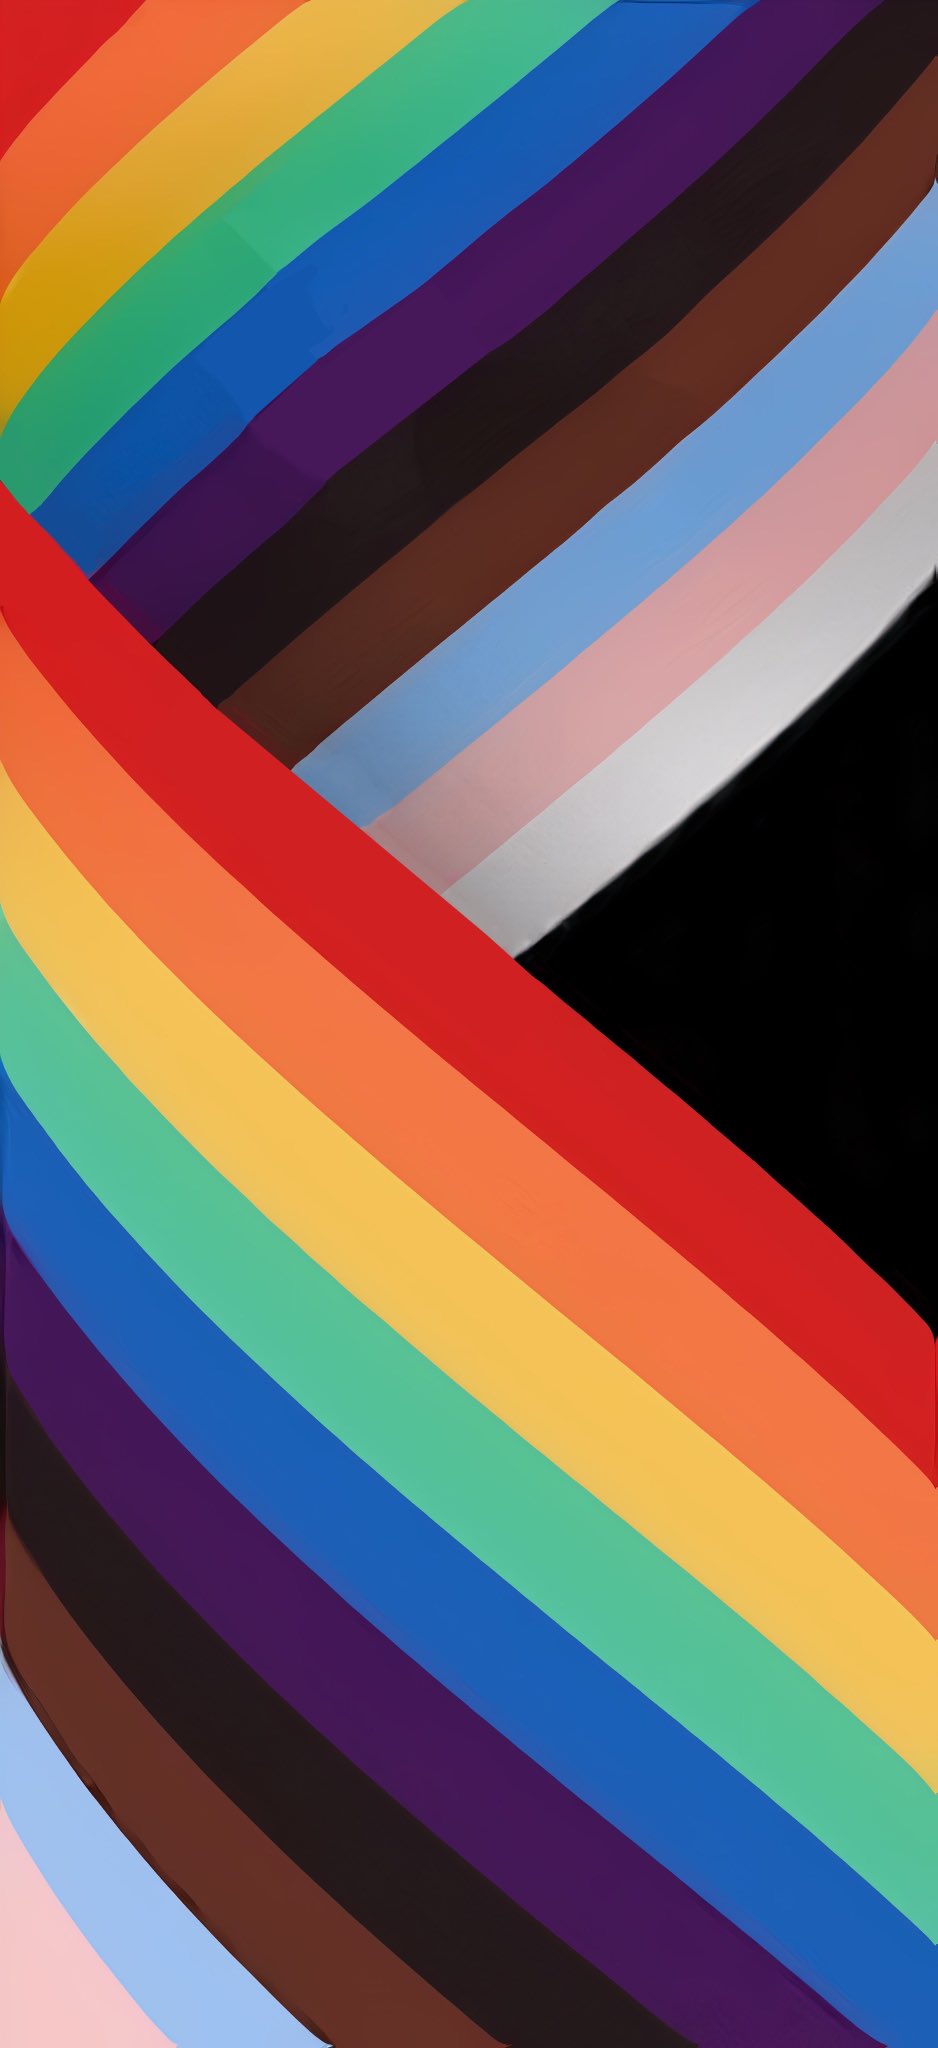 Lưu lại tinh thần đồng đội với bộ hình nền IOS 16 Pride. Đầy màu sắc, thú vị và kiêu hãnh, bạn sẽ thấy những giá trị của cộng đồng LGBT được tôn vinh một cách đầy tình yêu và chân thành. Hãy cùng trải nghiệm những điều tuyệt vời này với hình nền tuyệt đẹp này!